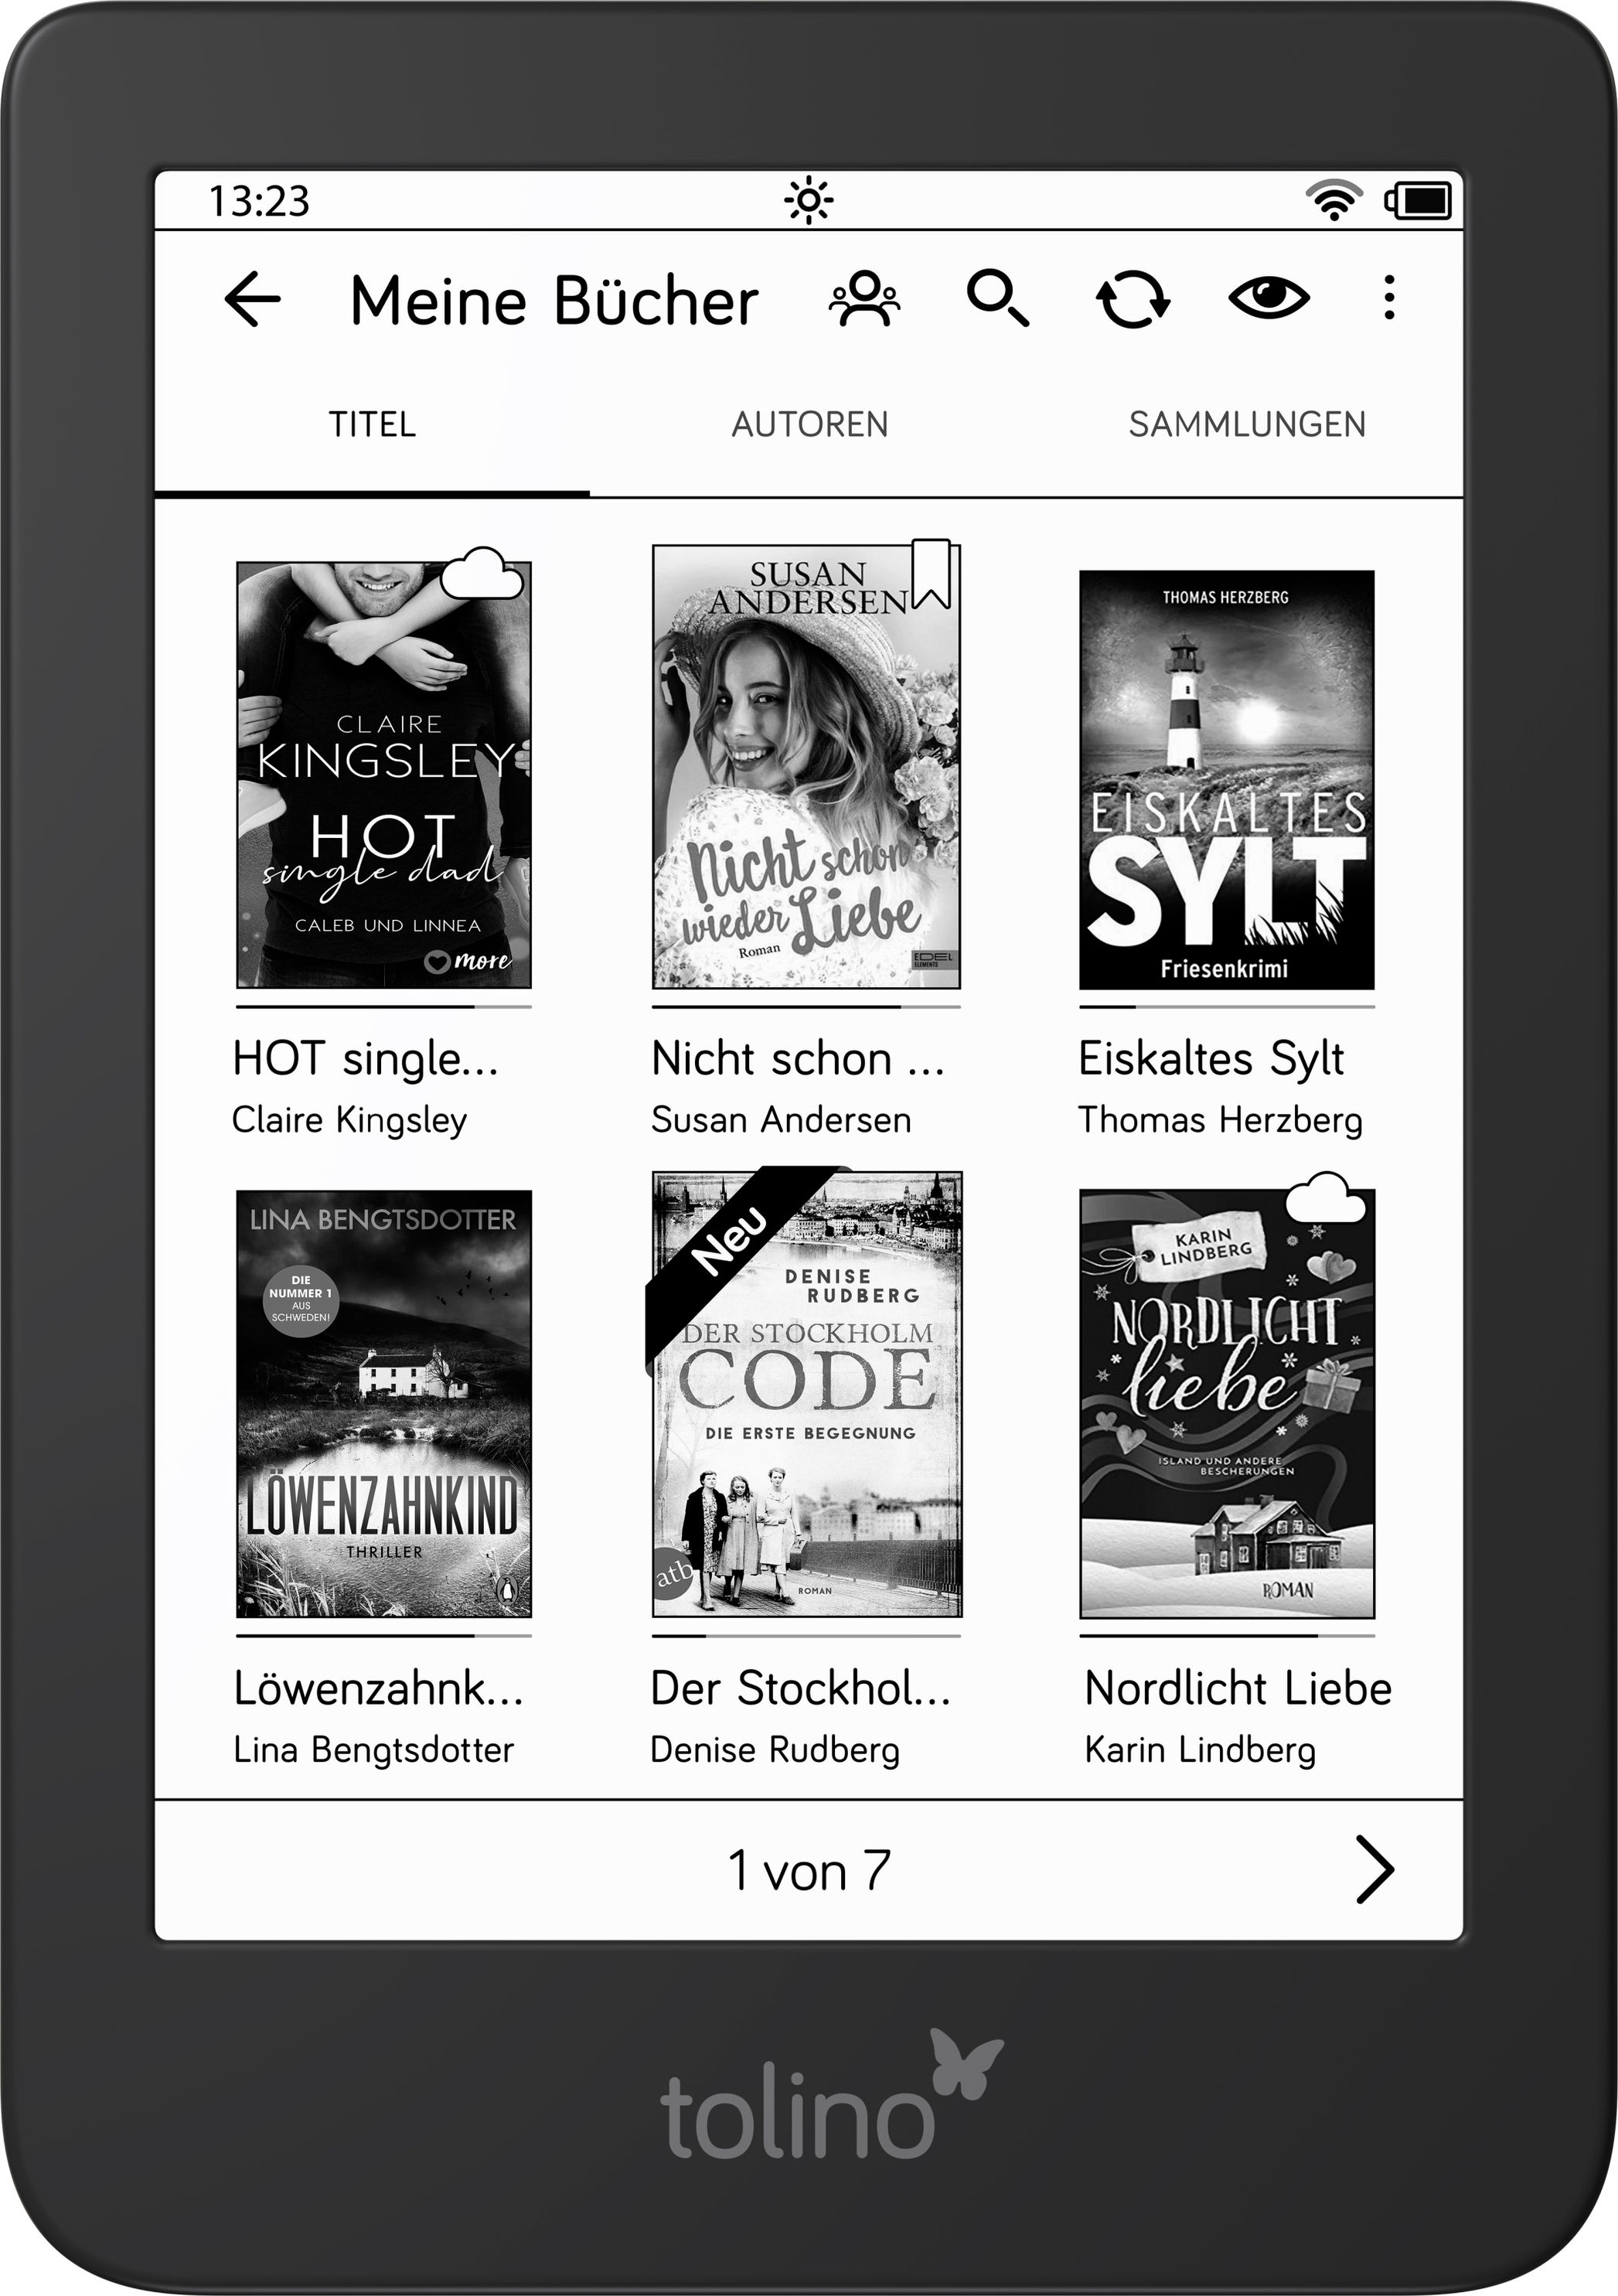 tolino shine 4 eBook-Reader jetzt bei Weltbild.de bestellen